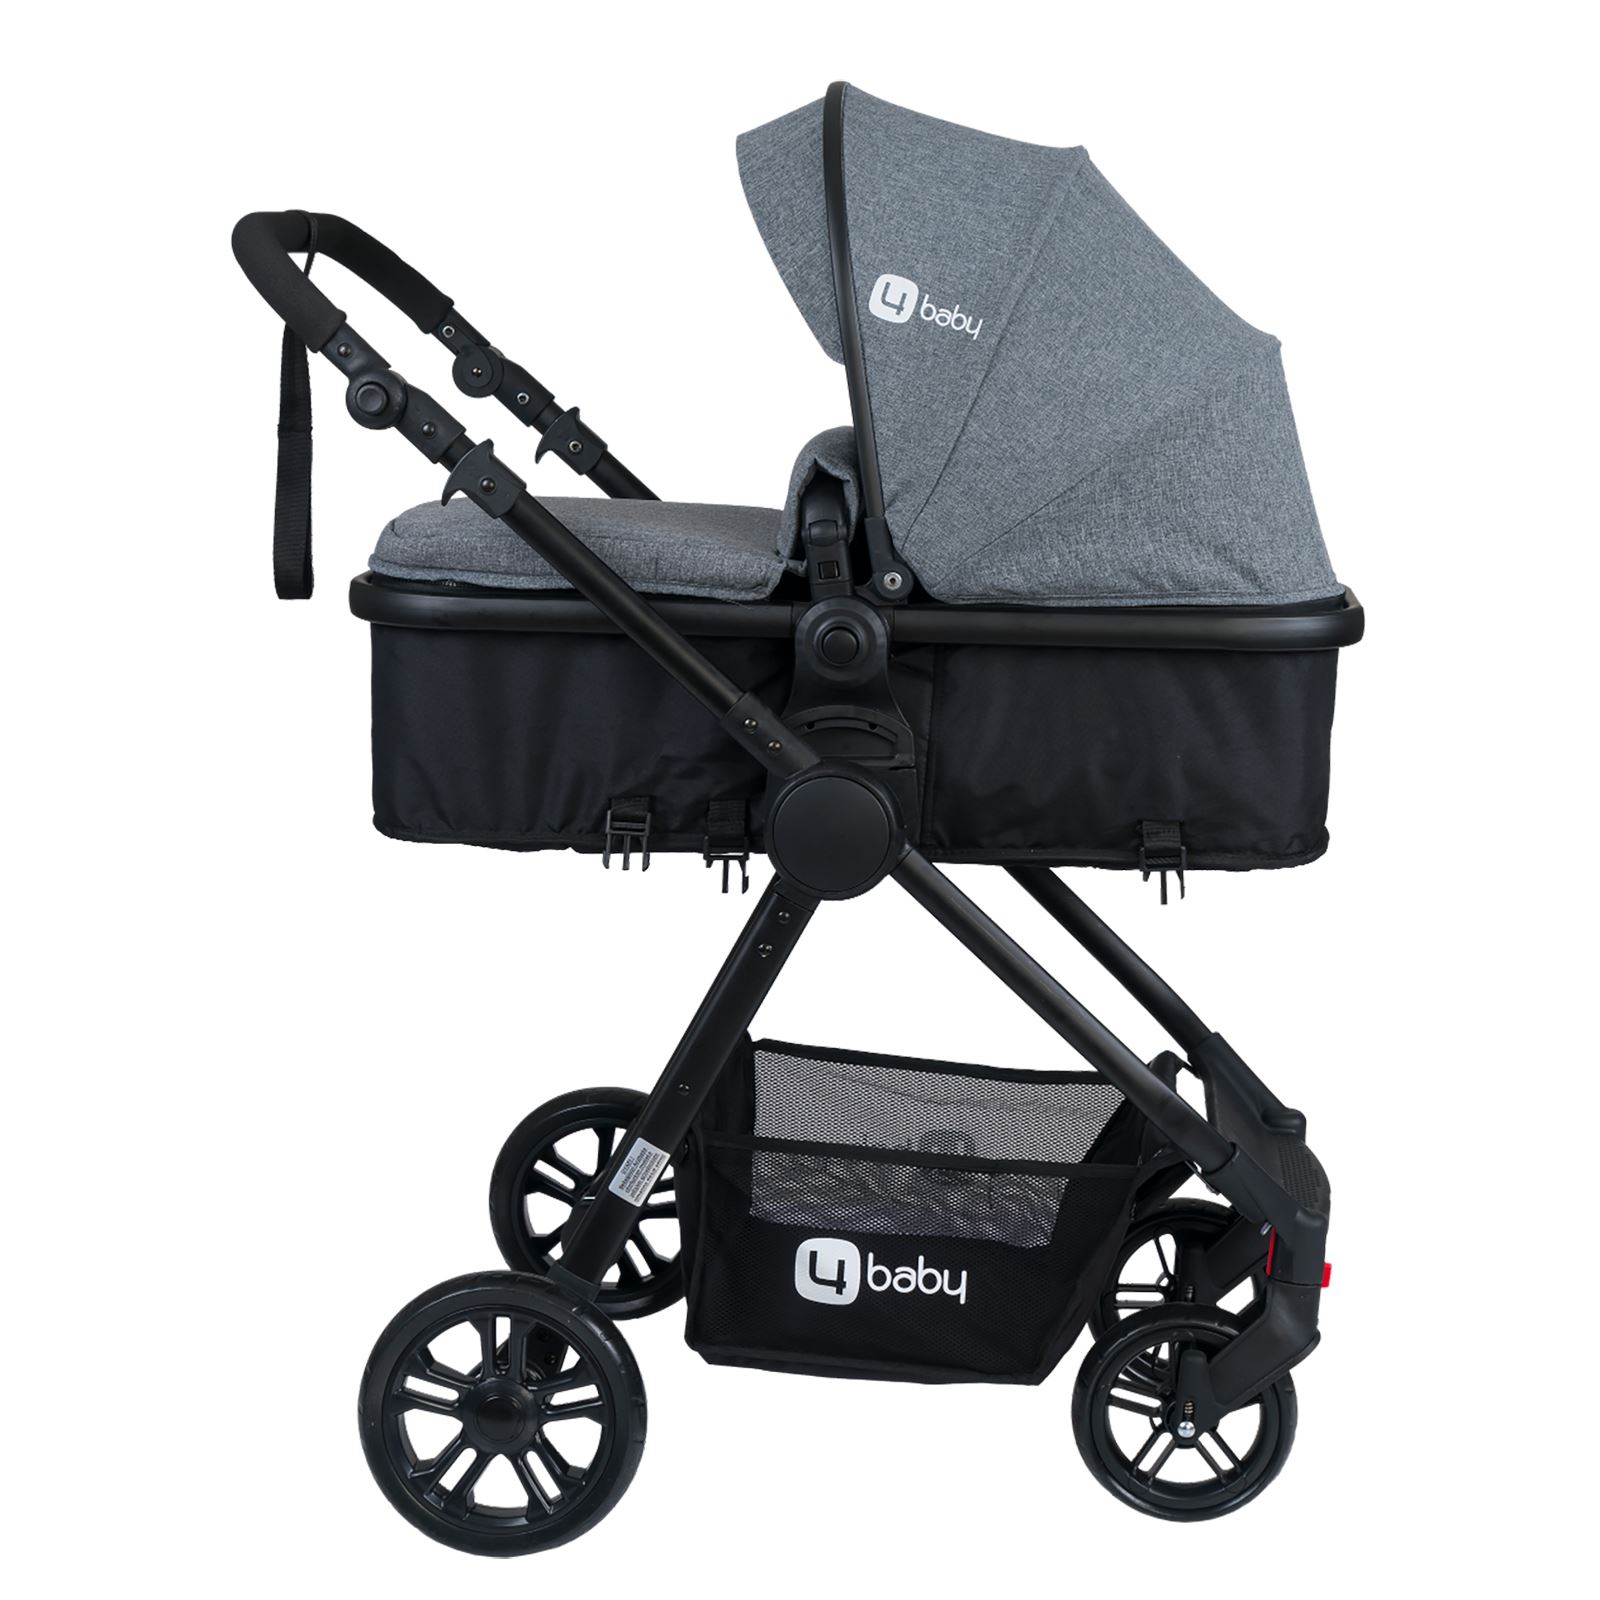 4 Baby Comfort Siyah Travel Sistem Bebek Arabası Gri